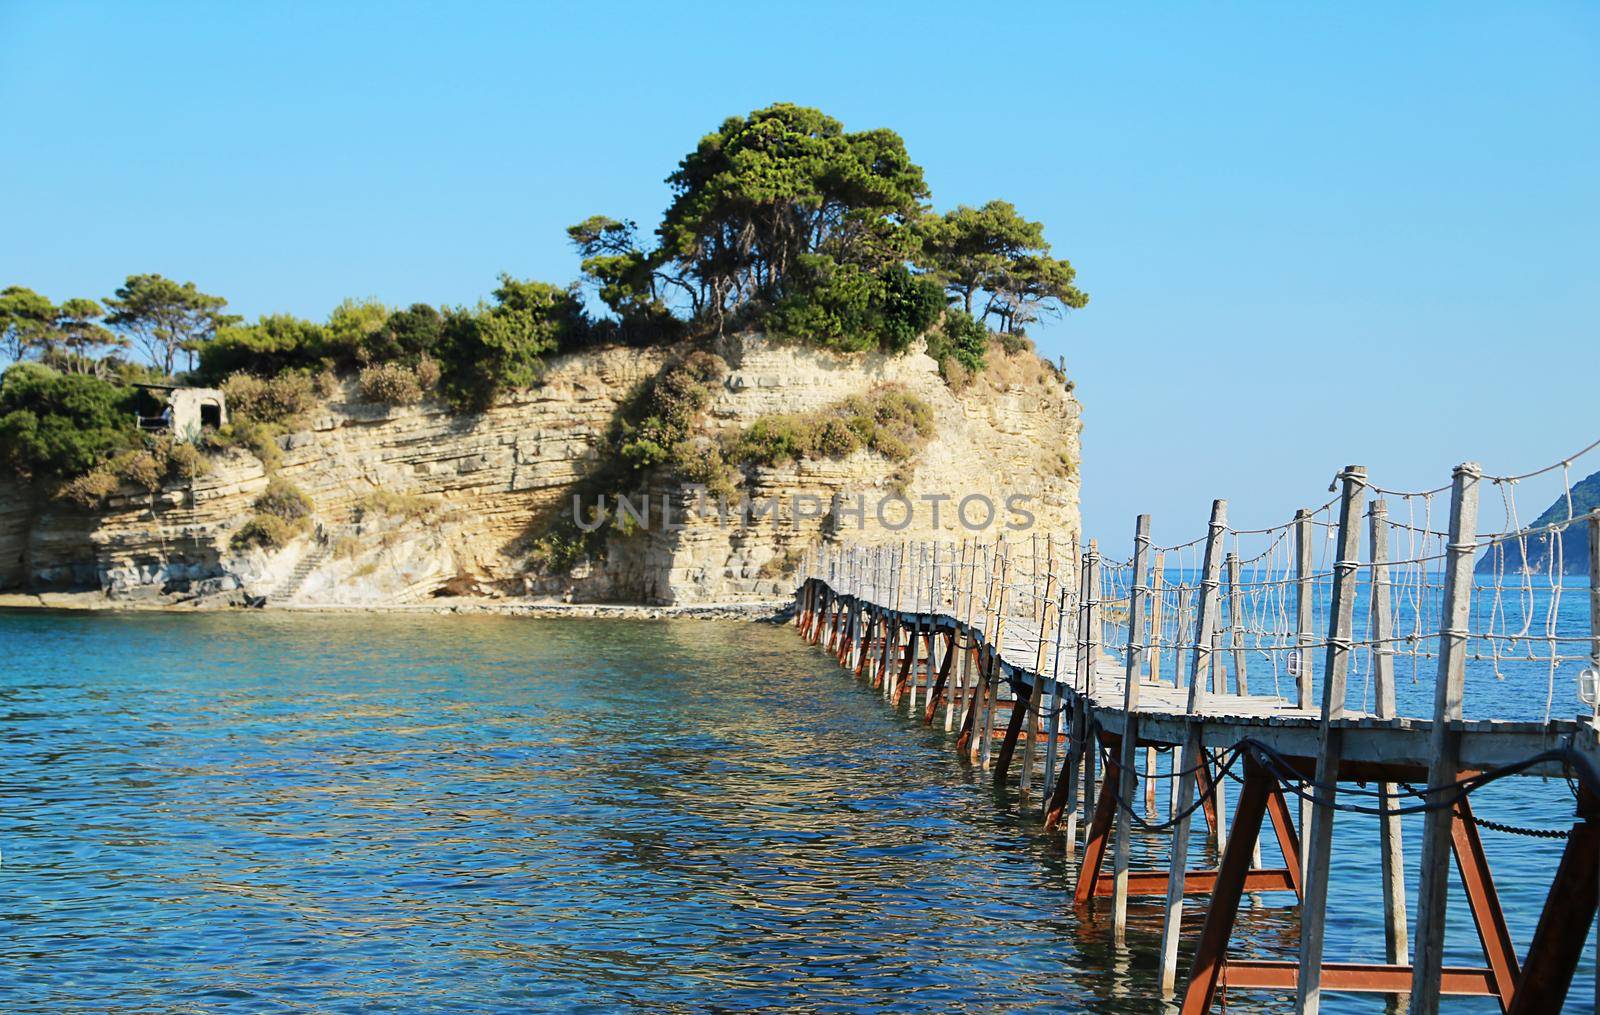 Wooden bridge leading to rocky island surrounded by blue sea. Greece, resort, Greek island Zakynthos